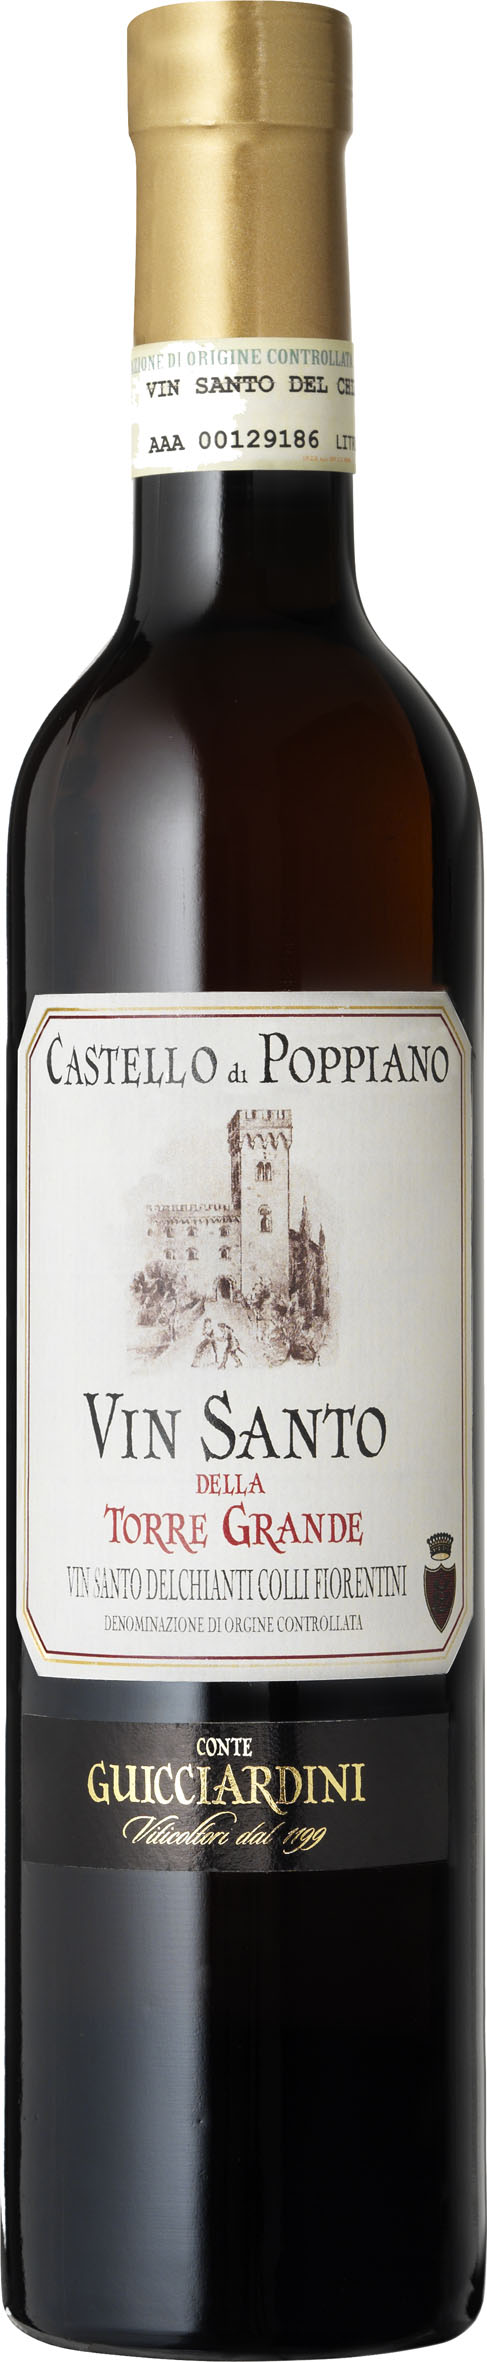 Bottle of Conte Ferdinando Guicciardini Castello di Poppiano Vin Santo della Torre Grande from search results